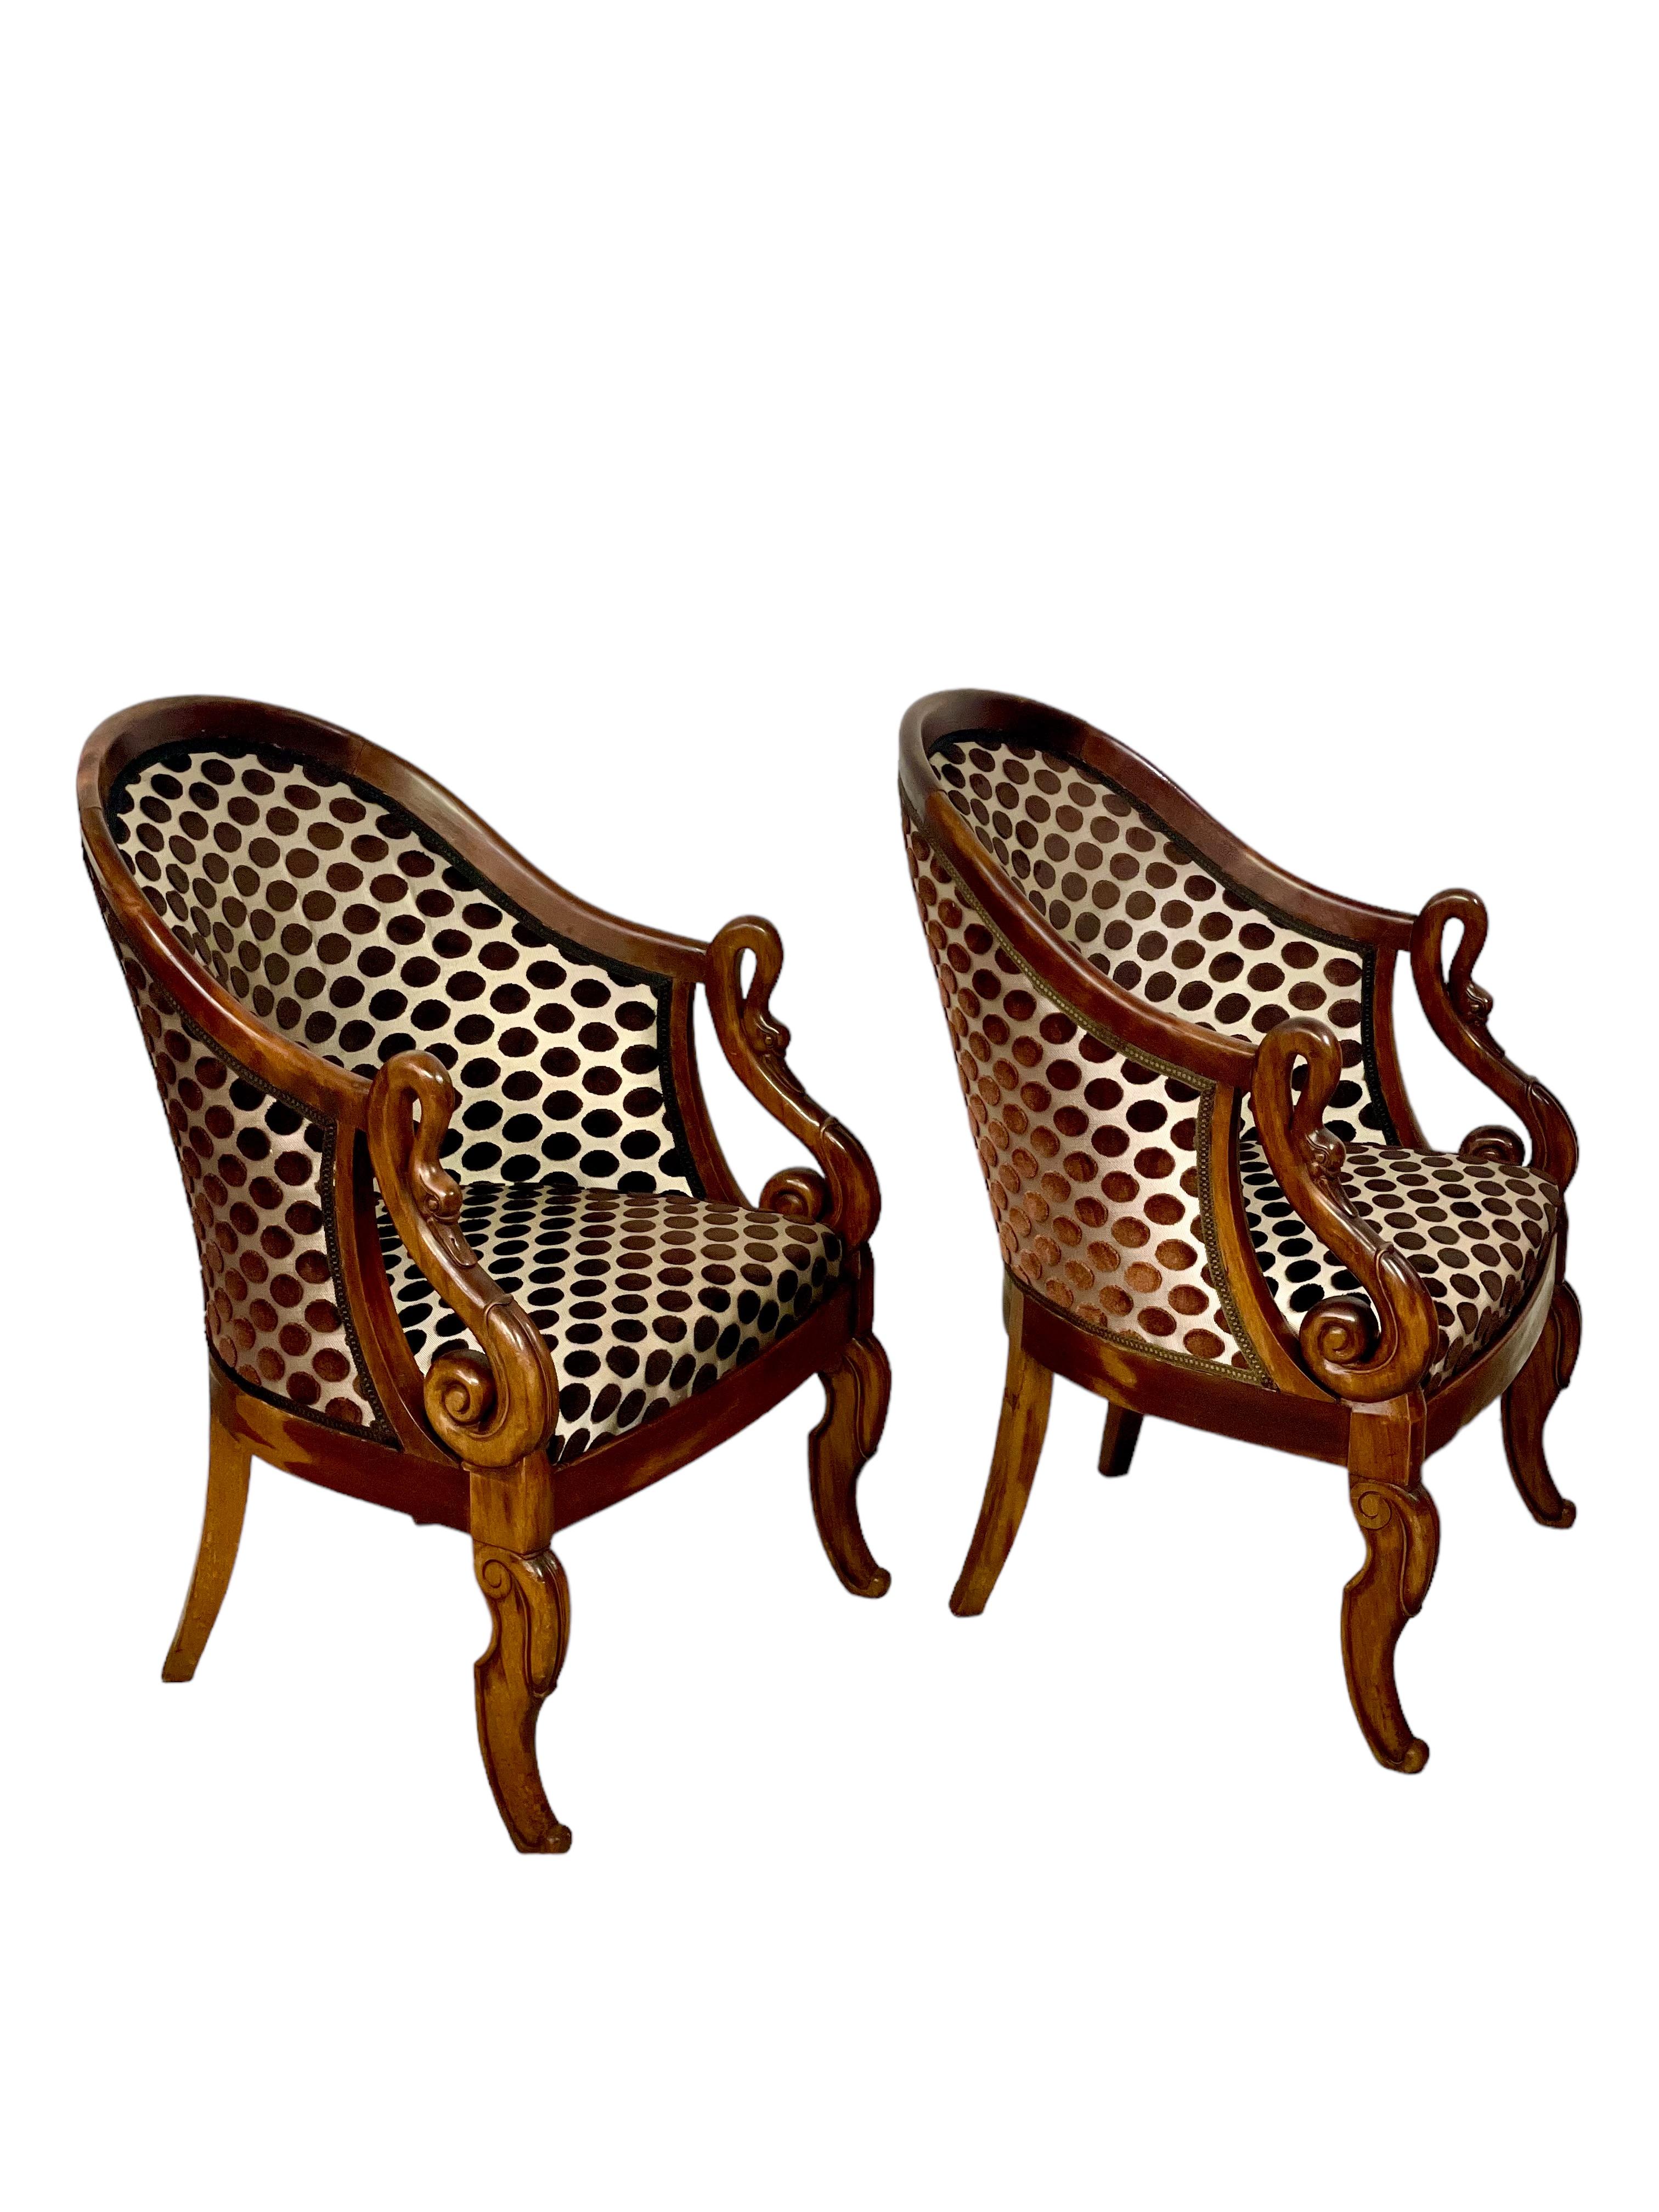 Cette paire de chaises Bergères de style Empire, datant du début du 20e siècle, rehausse votre intérieur. Ces élégants fauteuils sont dotés de dossiers en forme de gondole gracieusement incurvés et d'accoudoirs en col de cygne, offrant un confort